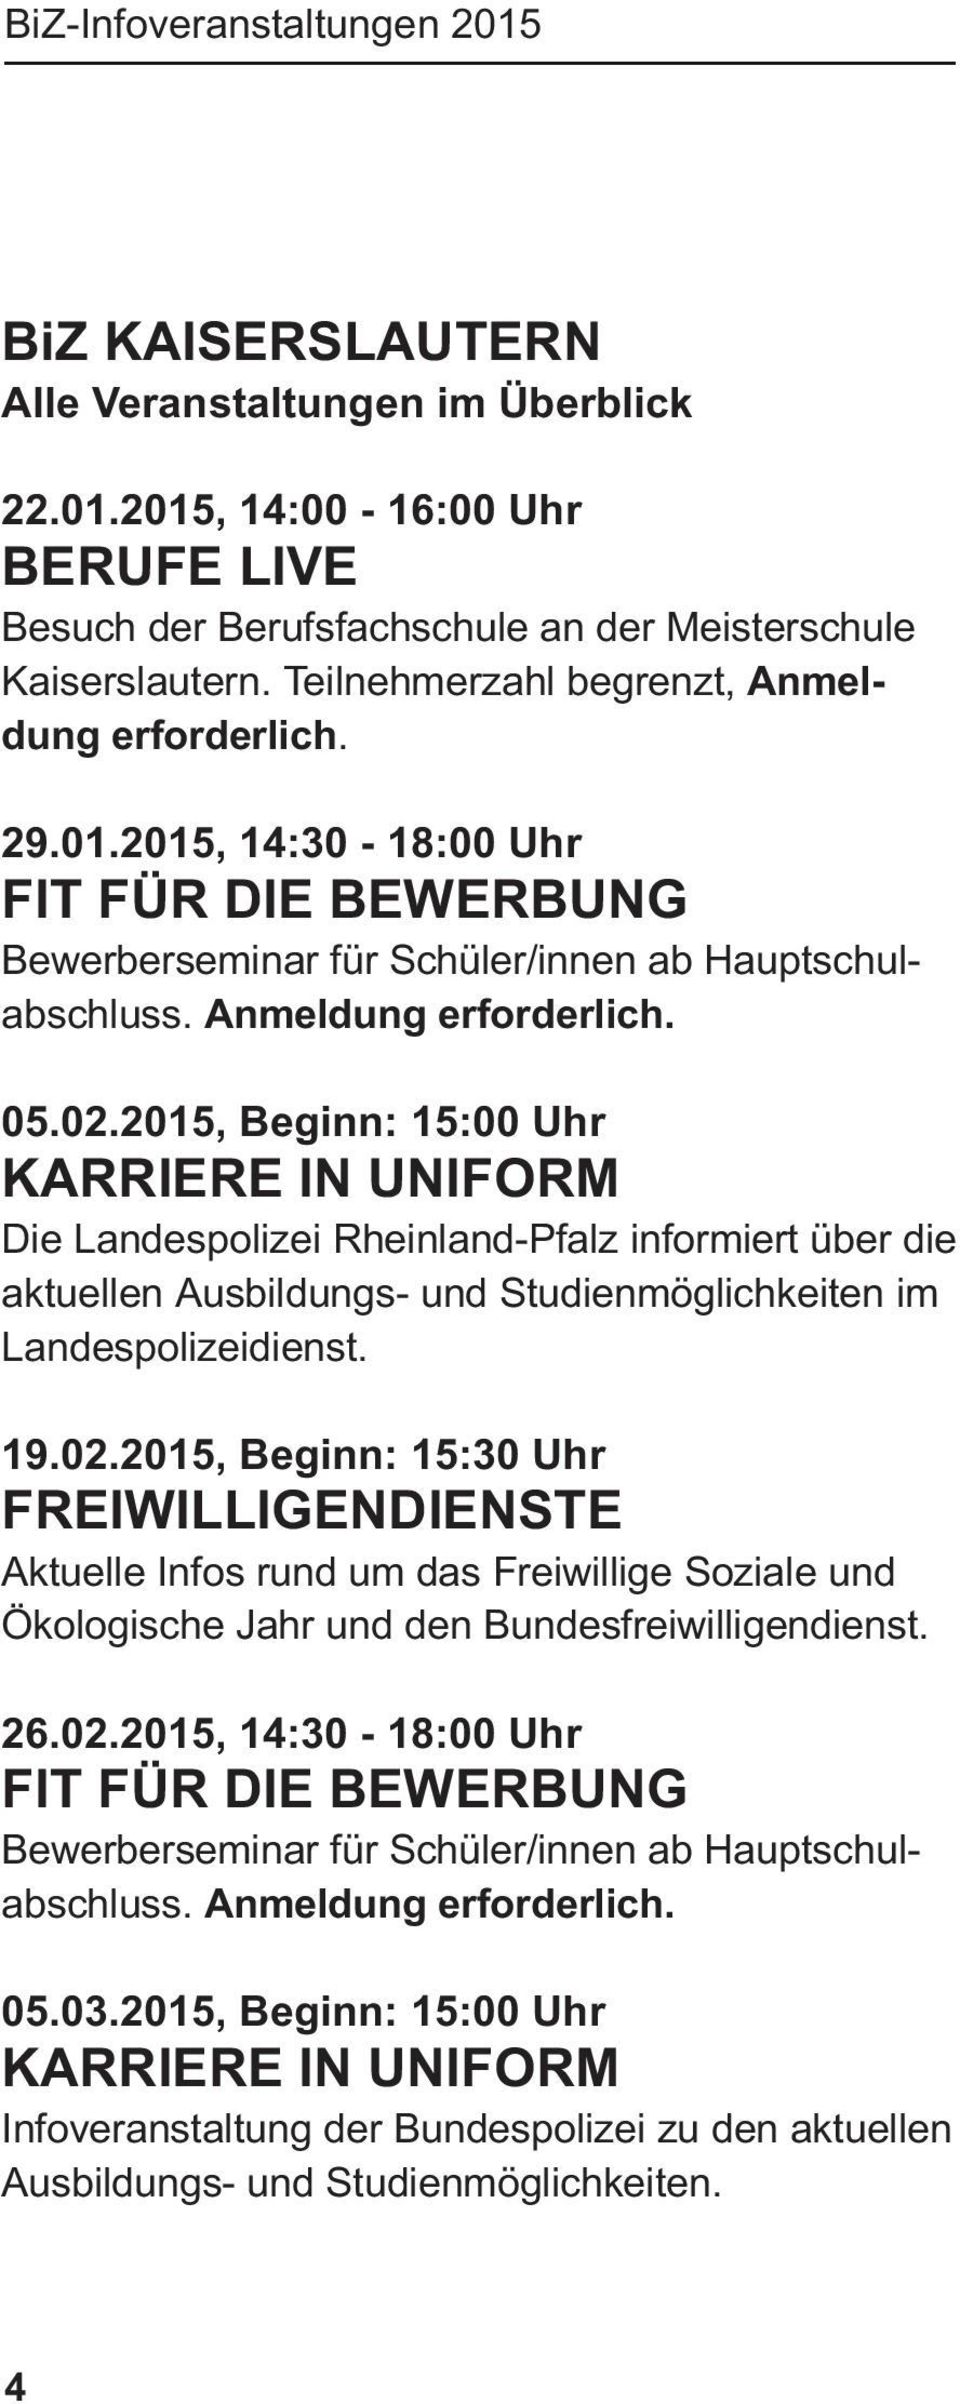 2015, Beginn: 15:00 Uhr KARRIERE IN UNIFORM Die Landespolizei Rheinland-Pfalz informiert über die aktuellen Ausbildungs- und Studienmöglichkeiten im Landespolizeidienst. 19.02.